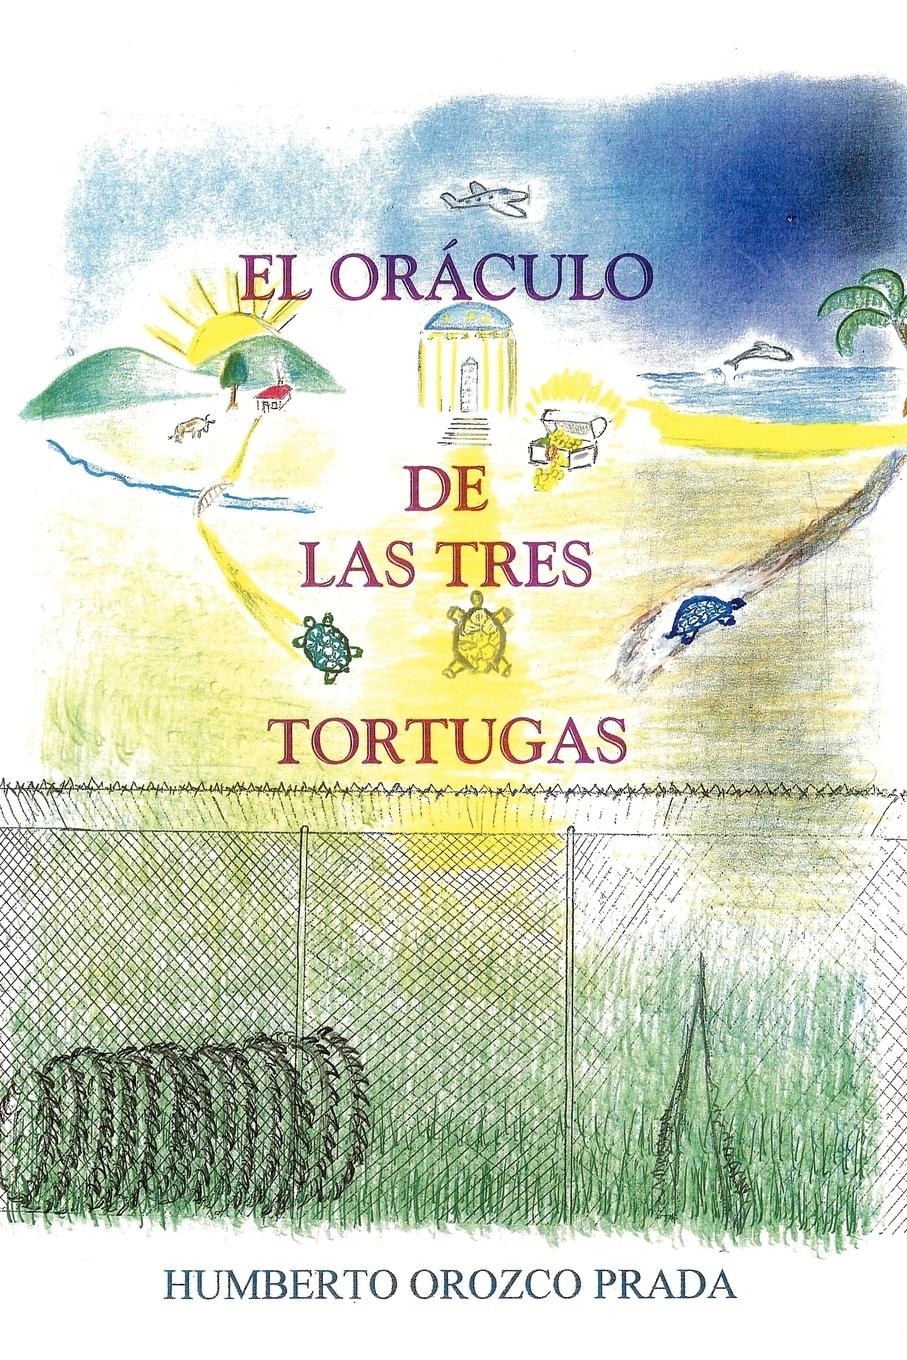 El Oraculo de Las Tres Tortugas - Prada Humberto, Orozco Prada, Orozco